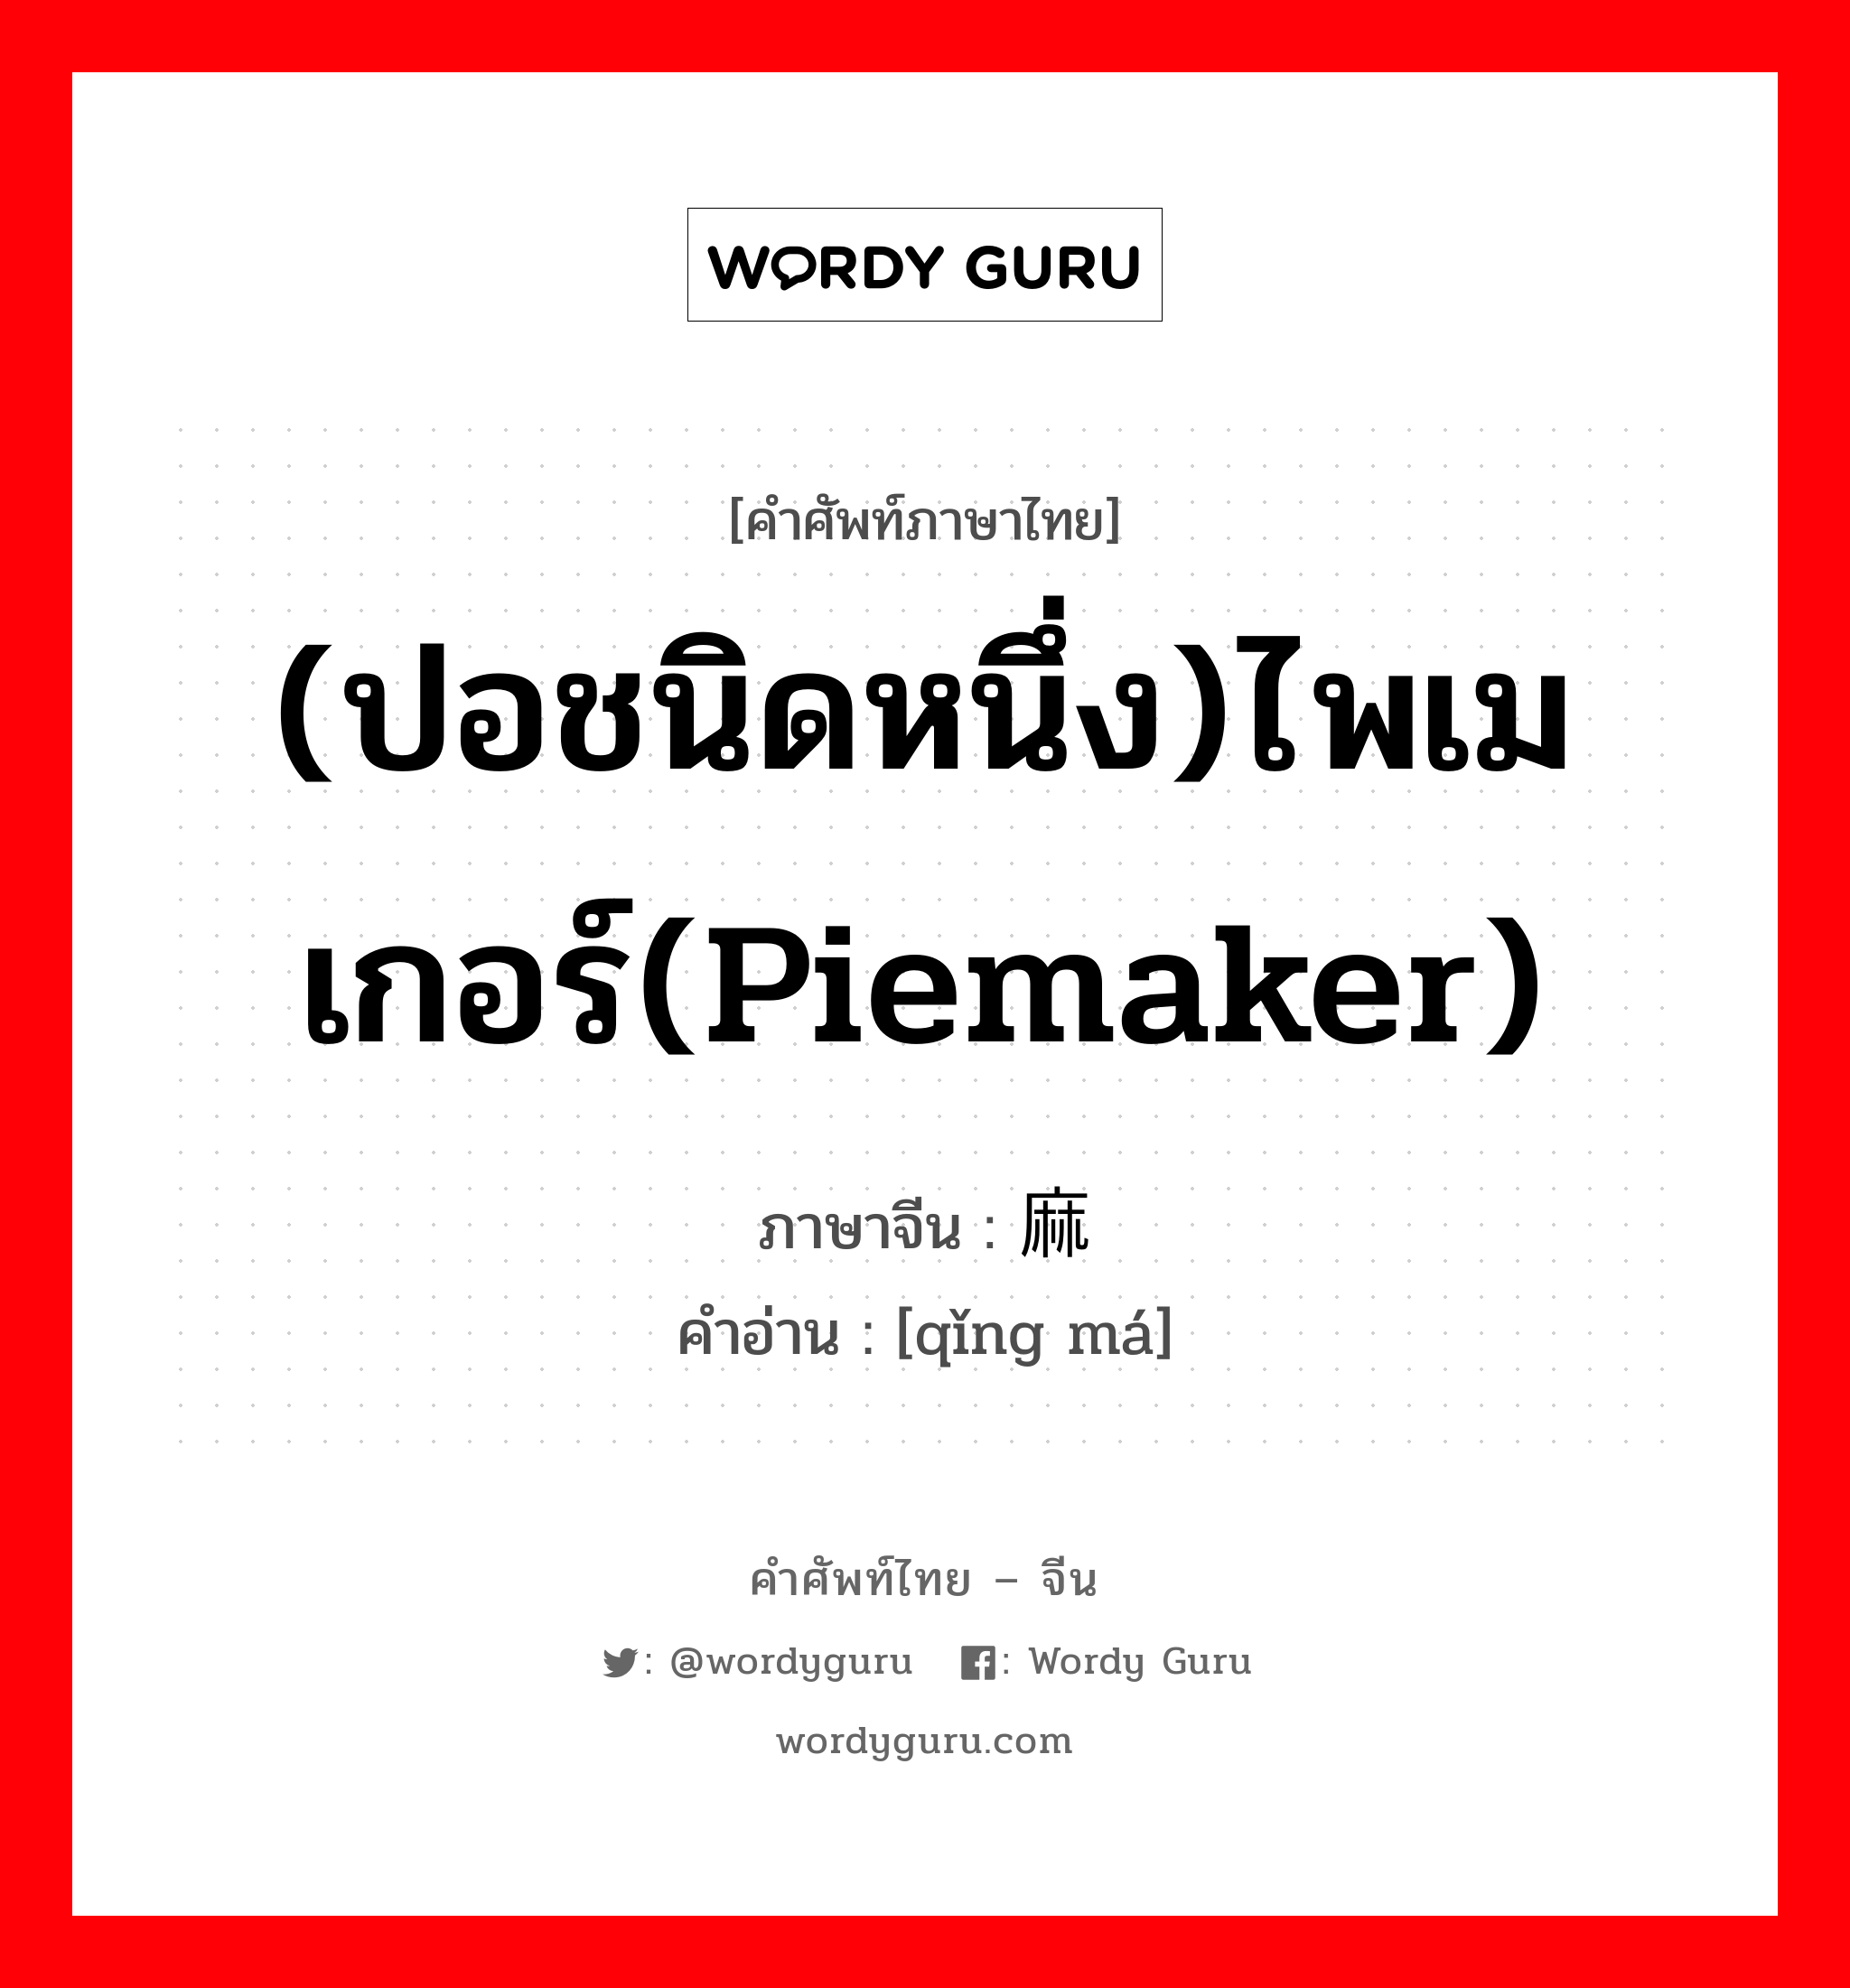 (ปอชนิดหนึ่ง)ไพเมเกอร์(piemaker) ภาษาจีนคืออะไร, คำศัพท์ภาษาไทย - จีน (ปอชนิดหนึ่ง)ไพเมเกอร์(piemaker) ภาษาจีน 苘麻 คำอ่าน [qǐng má]